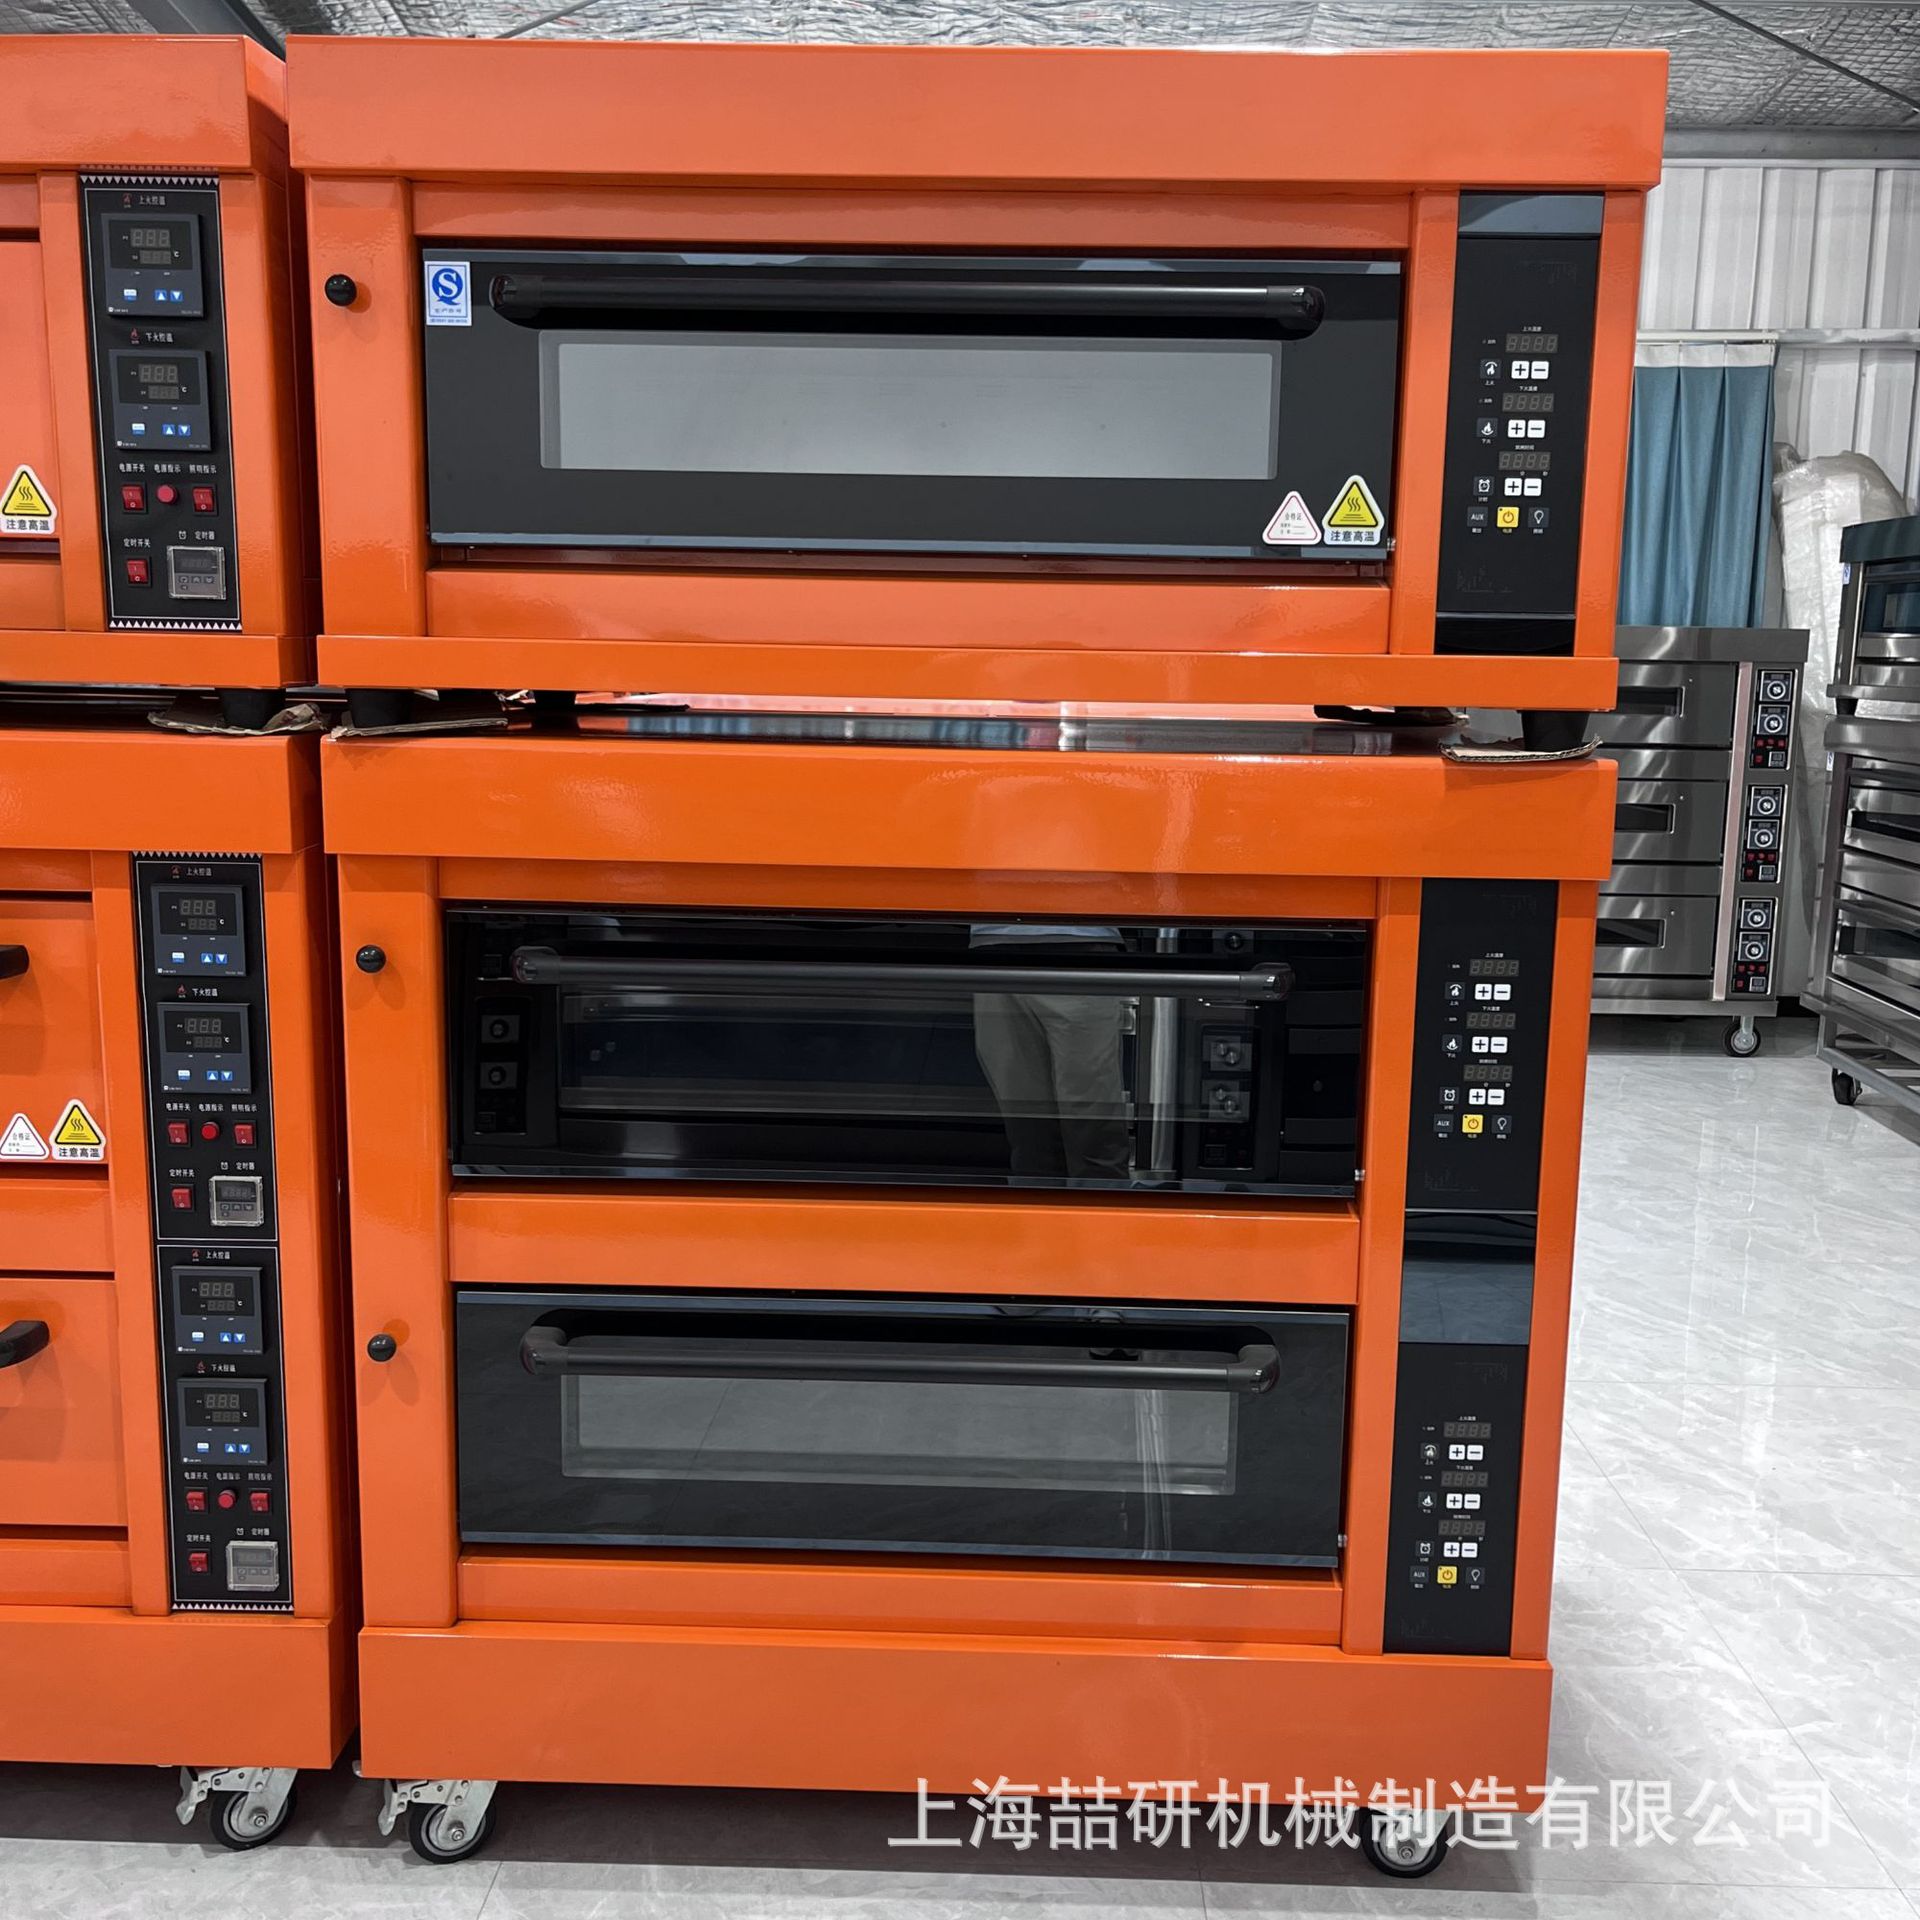 大型商用电烤箱 智能电脑版400℃ 两层四盘 披萨面包月饼烘焙烤炉